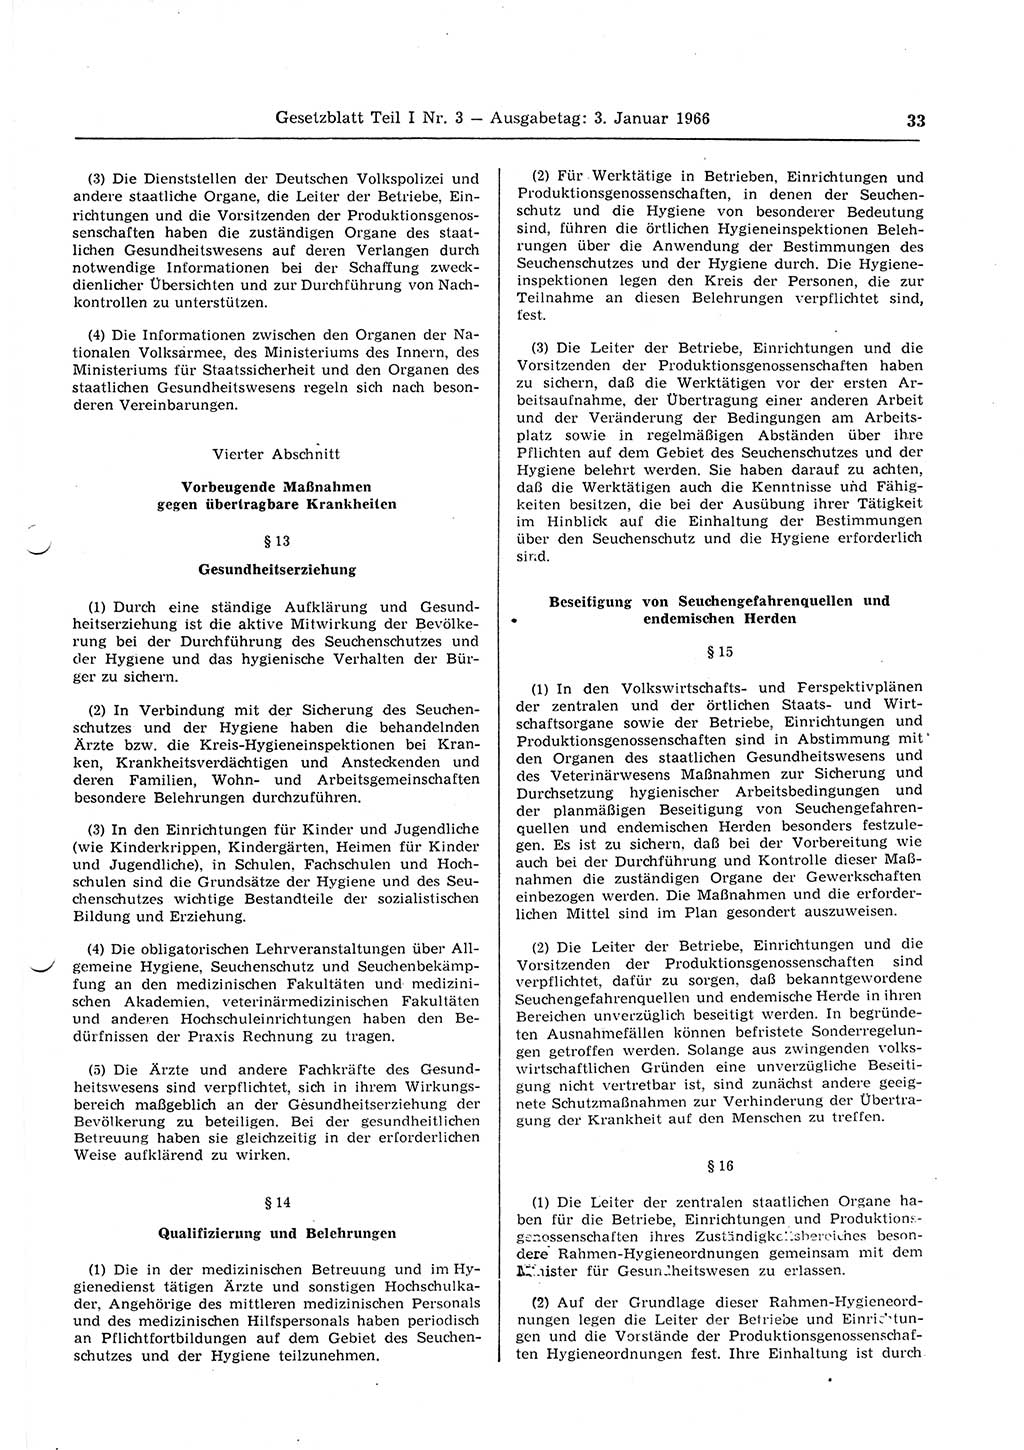 Gesetzblatt (GBl.) der Deutschen Demokratischen Republik (DDR) Teil Ⅰ 1966, Seite 33 (GBl. DDR Ⅰ 1966, S. 33)